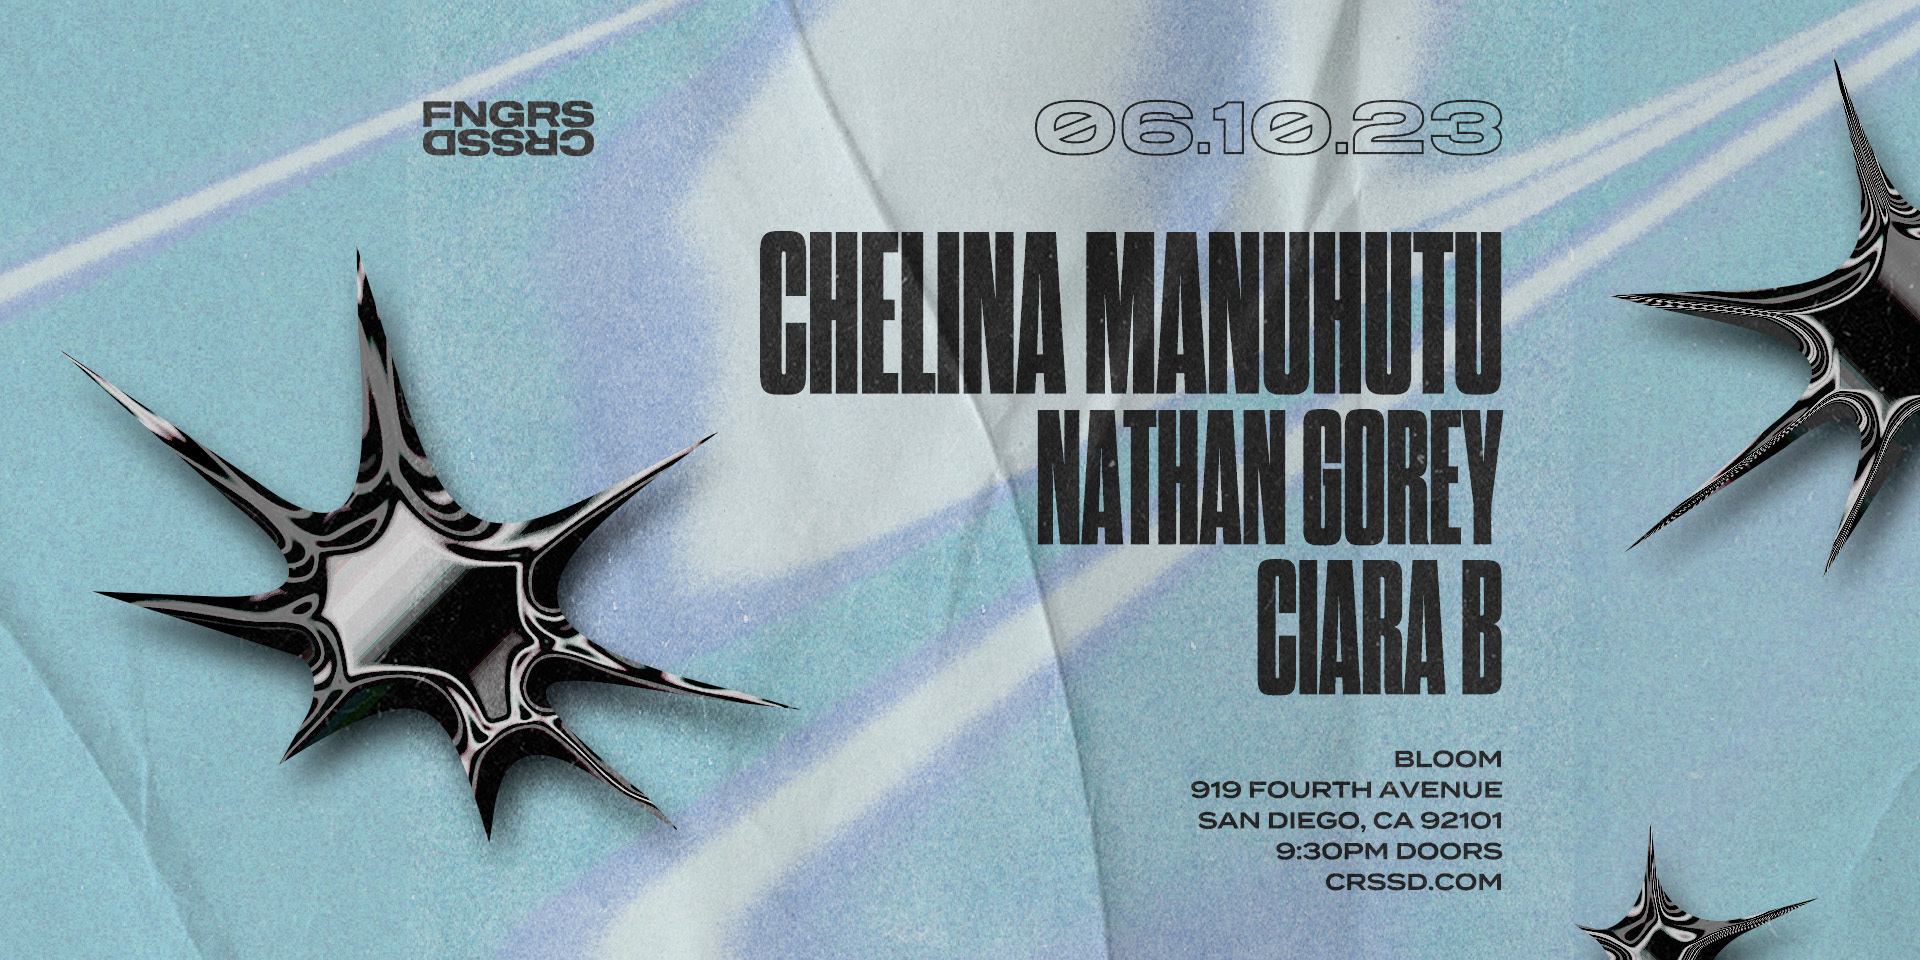 Chelina Manuhutu + Ciara B + Nathan Gorey